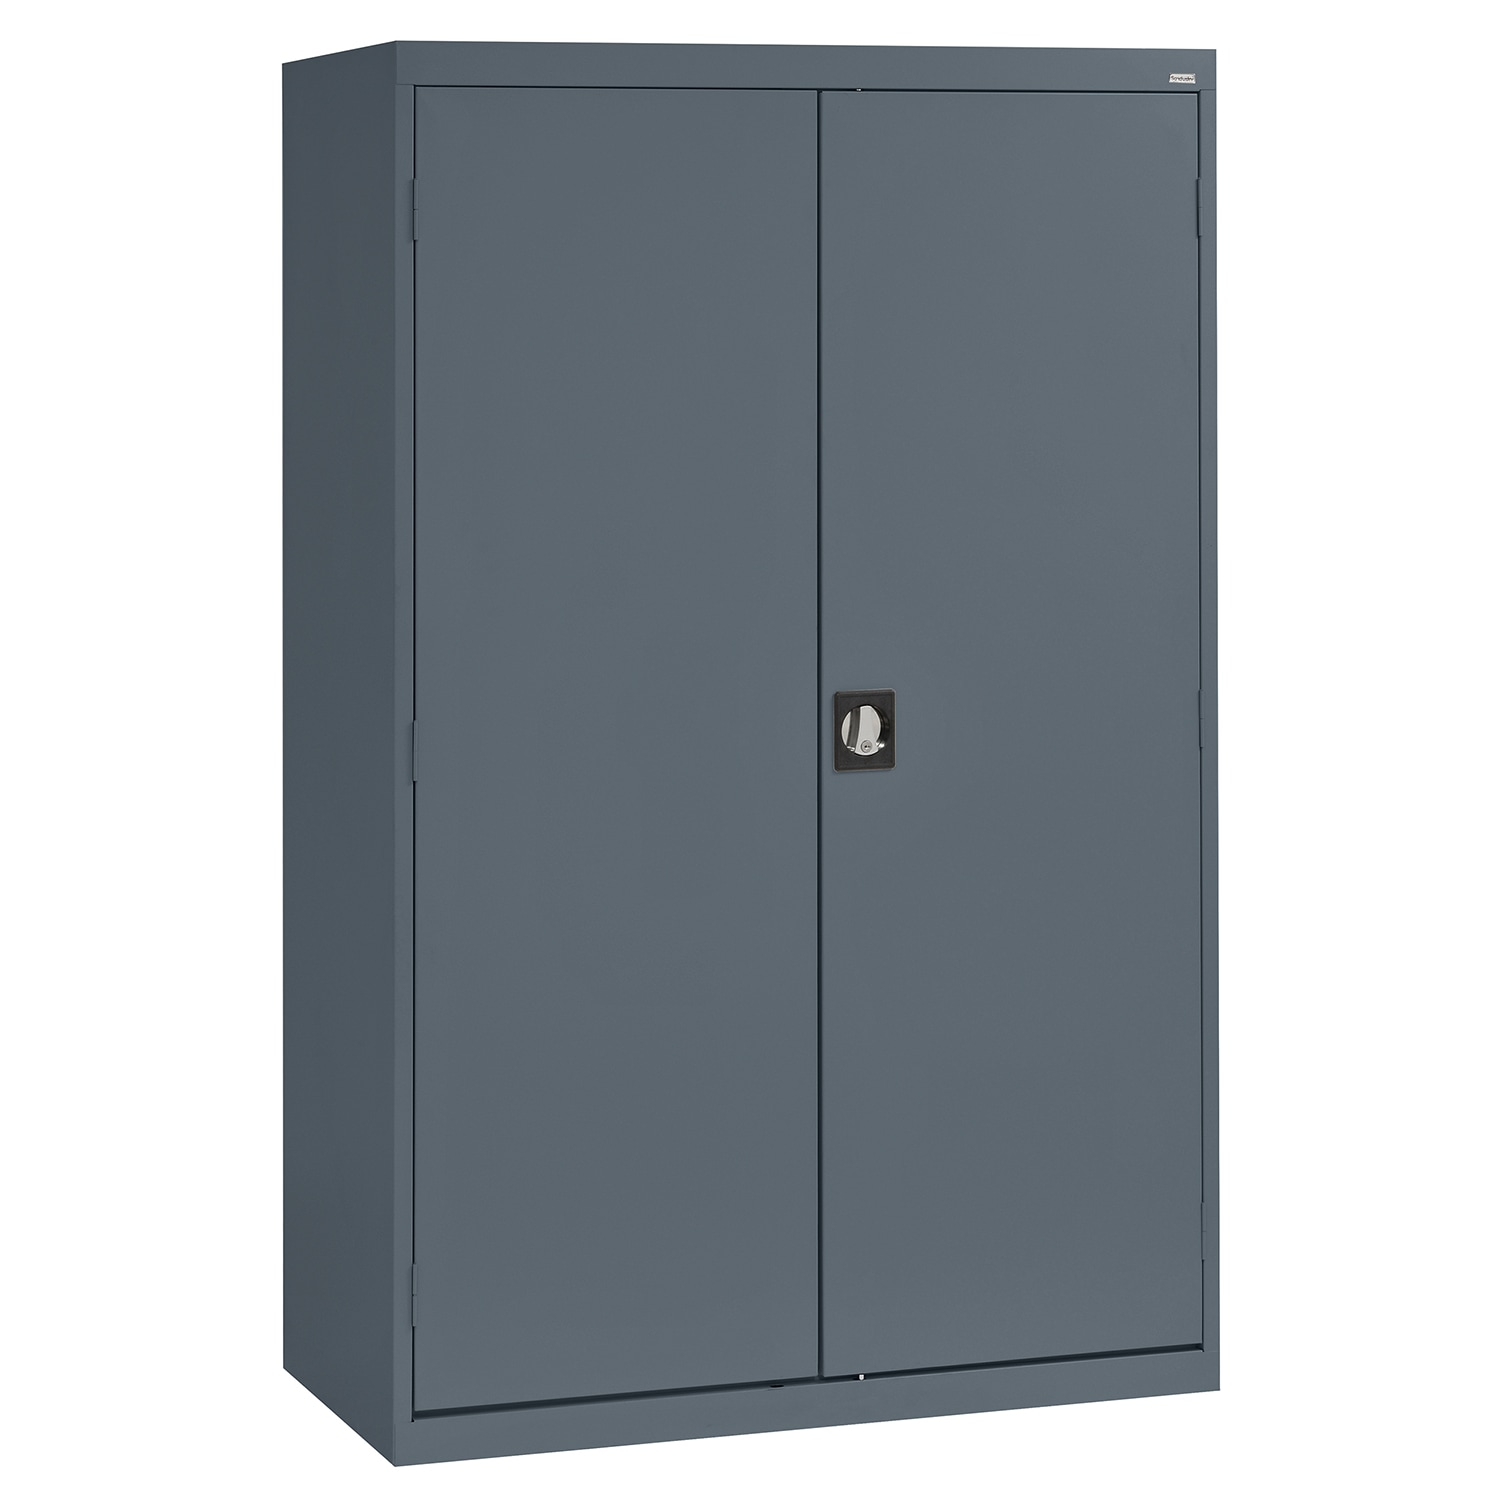 Steel Freestanding Garage Cabinet in Gray (46-in W x 72-in H x 24-in D) | - Sandusky EACR462472-02